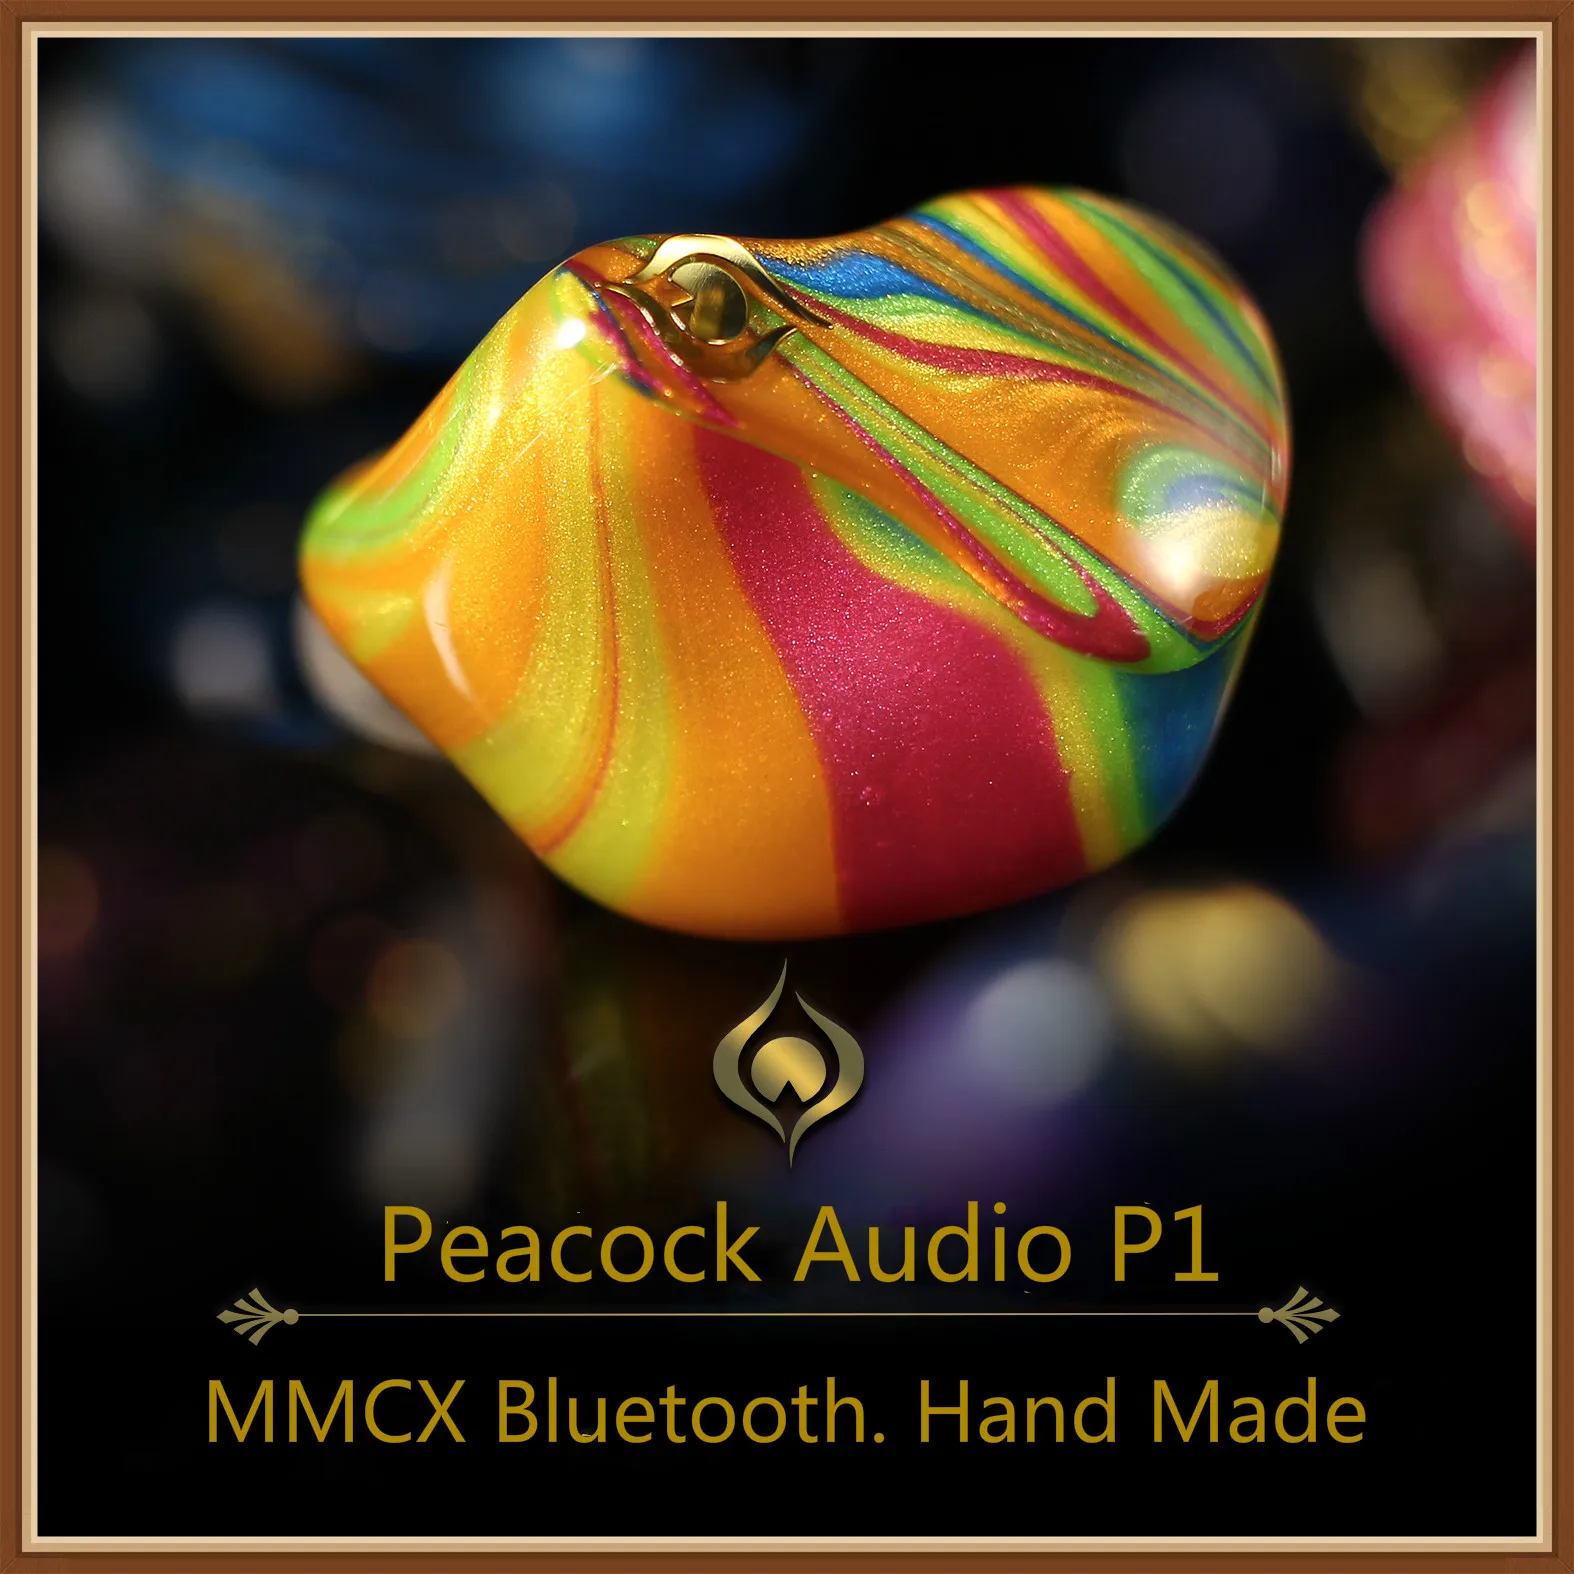 Peacock Audio P1 динамические наушники-вкладыши HIFI музыкальный монитор DJ Studio изготовленные вручную яркие наушники-вкладыши w/MMCX bluetooth-кабель